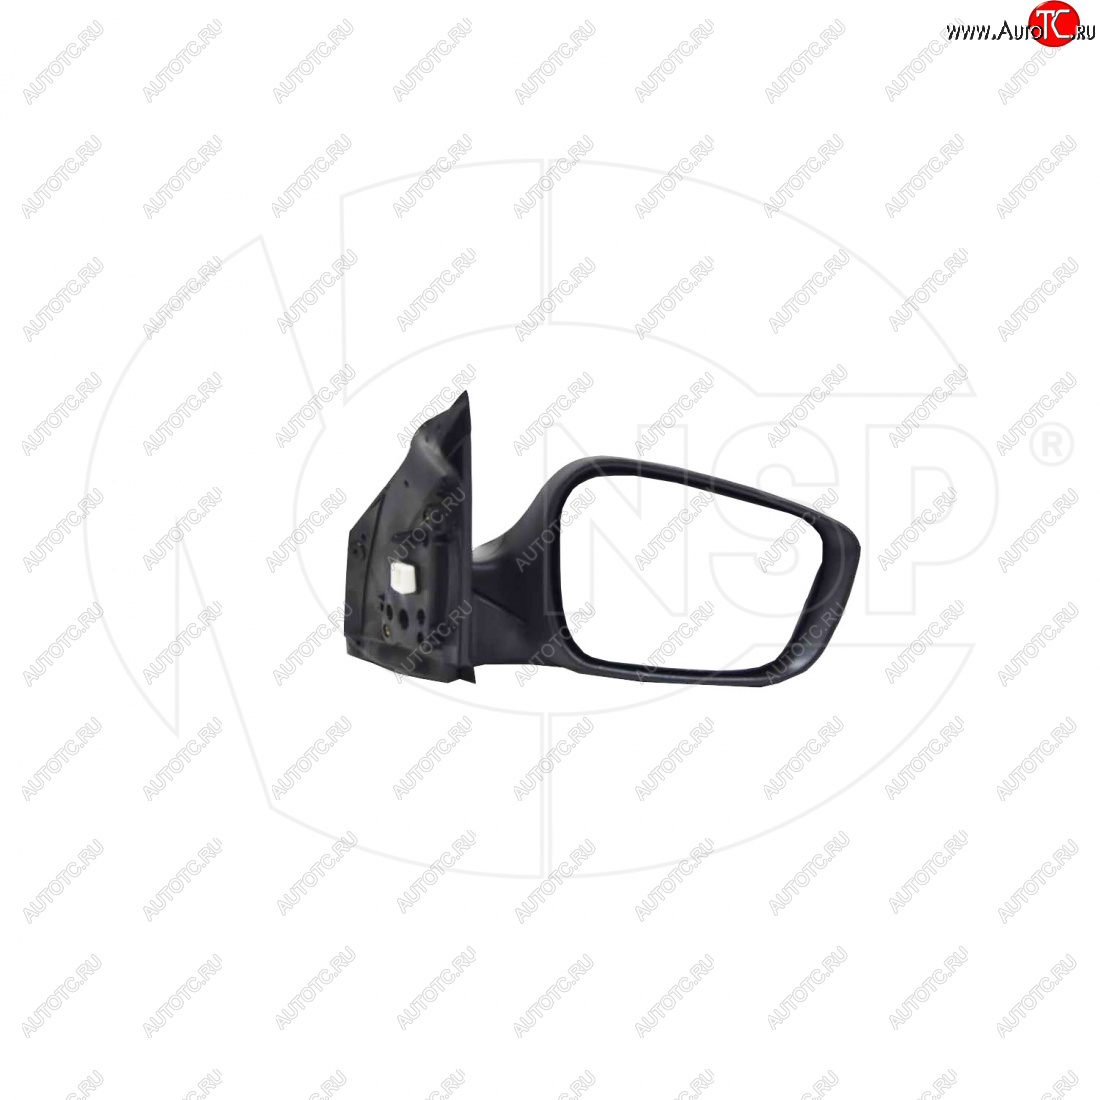 4 499 р. Зеркало зеркало заднего вида правое (регулировка, обогрев, повторитель) NSP  Hyundai Solaris ( 1 седан,  1 хэтчбек,  1 хэтчбэк) (2010-2017) (, Неокрашенное)